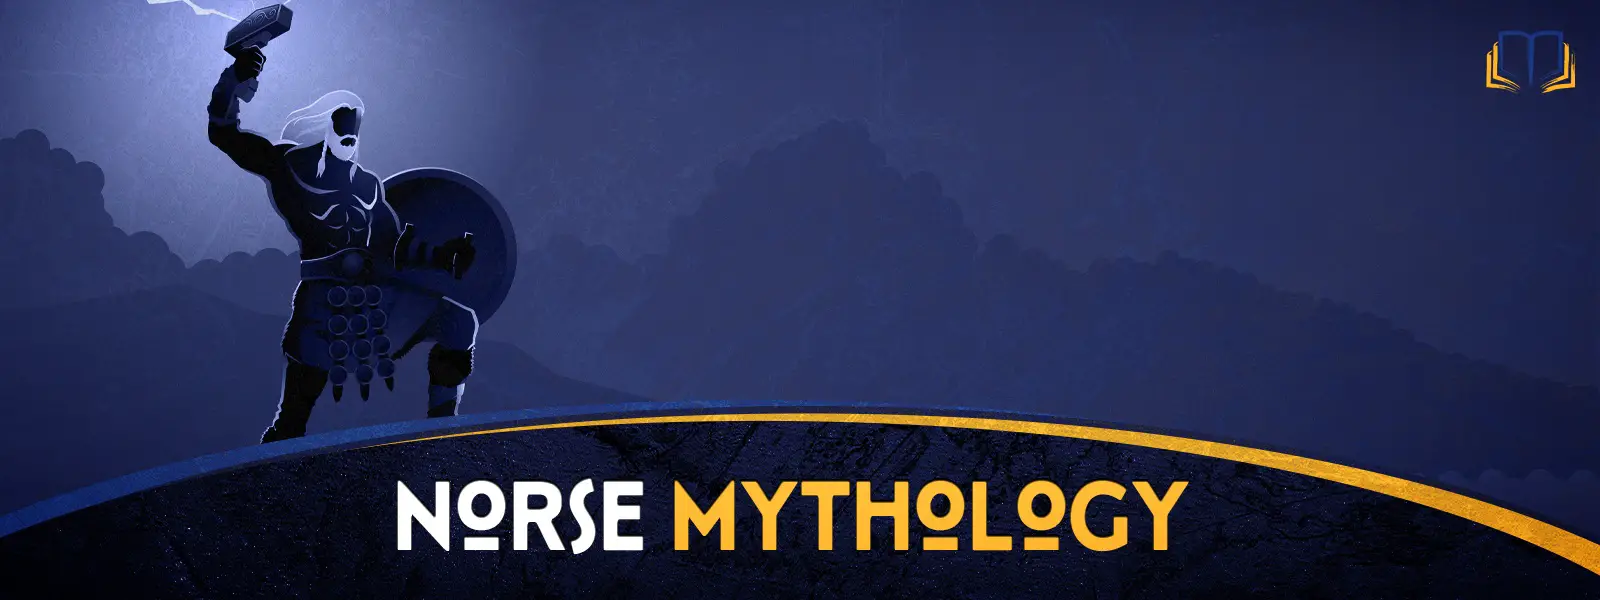 banner image that says norse mythology